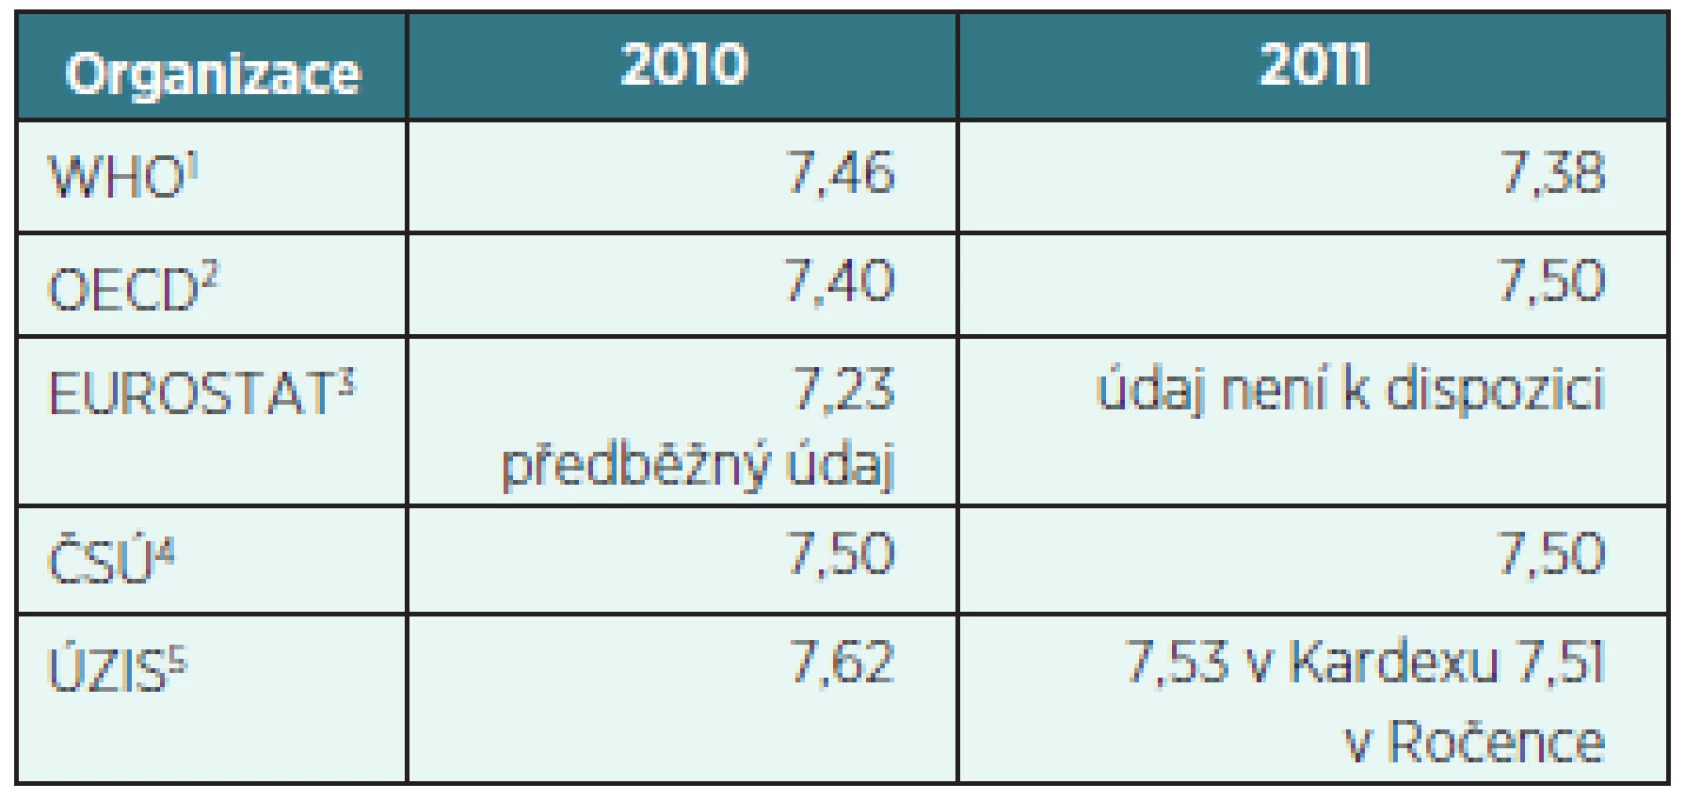 Celkové výdaje na zdravotnictví v ČR jako procento HDP podle institucí